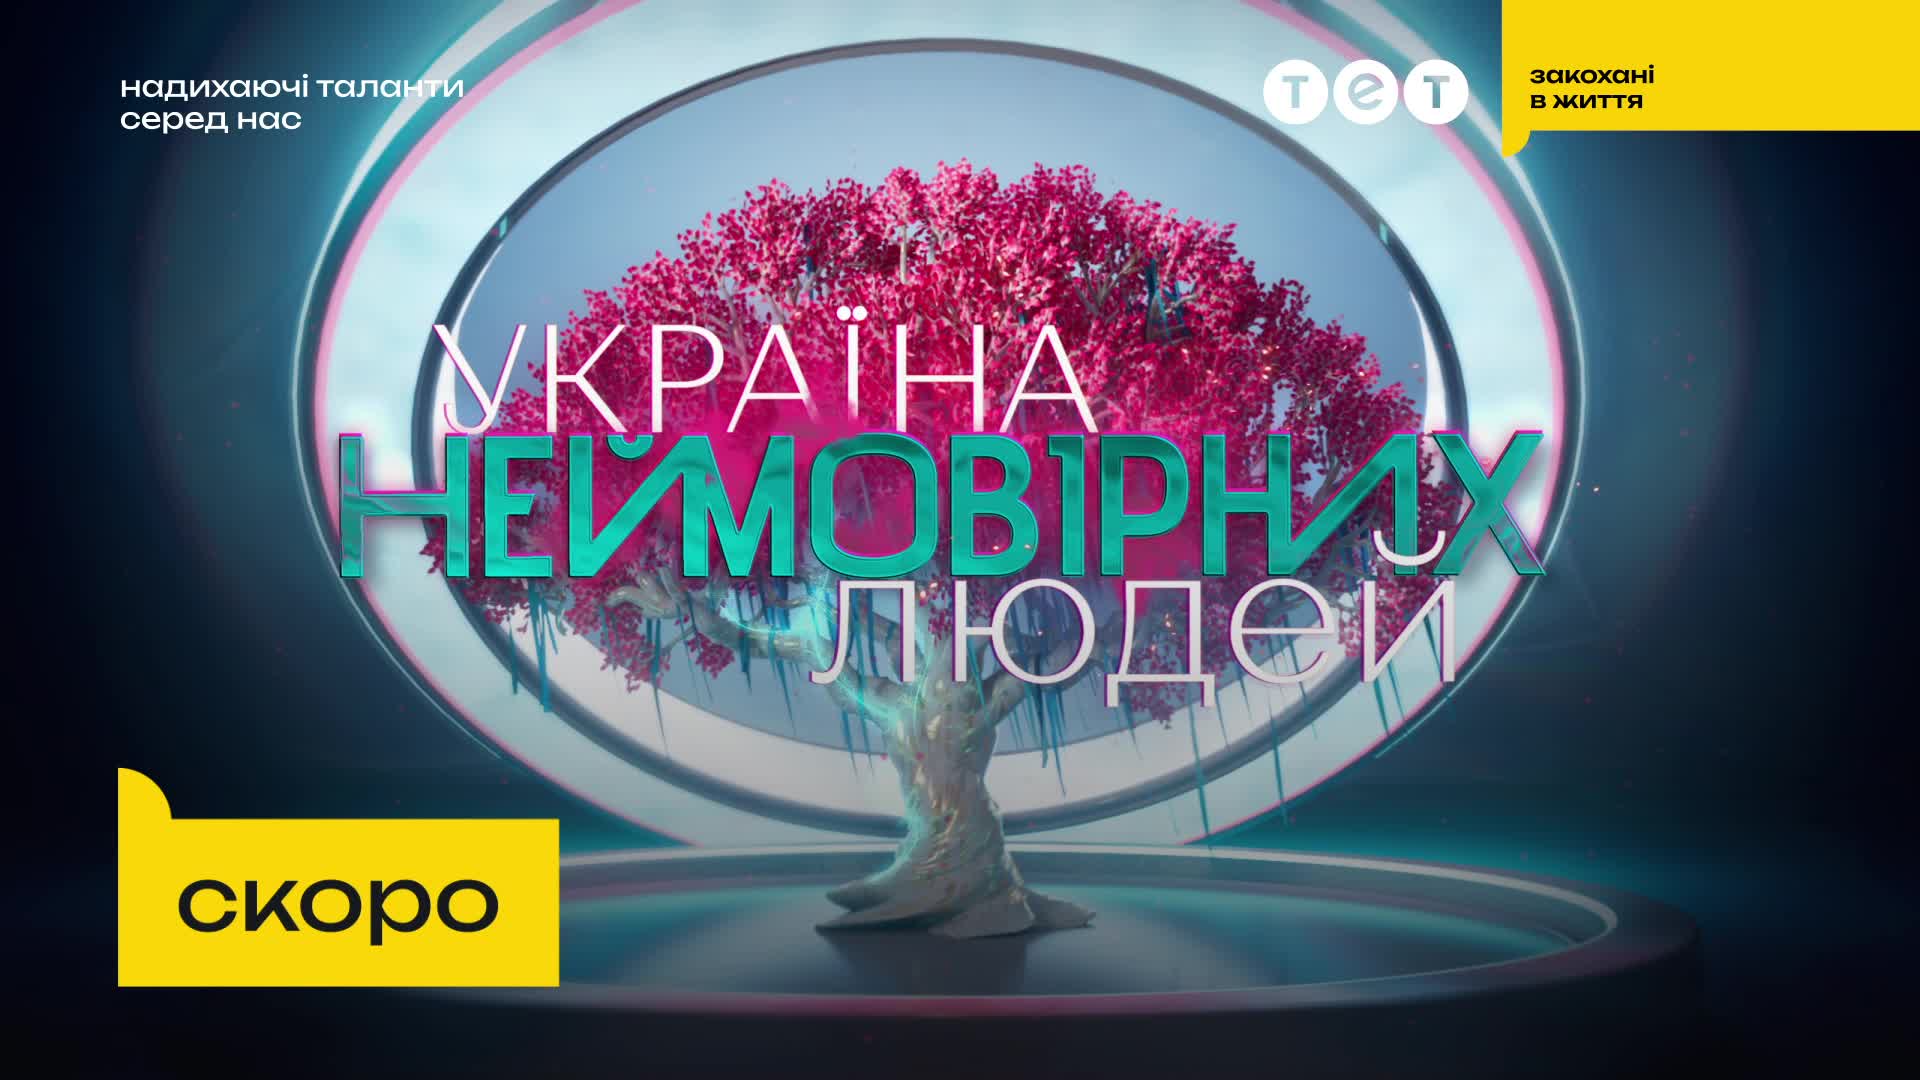 Надихаючі таланти серед нас – Україна неймовірних людей скоро на ТЕТ